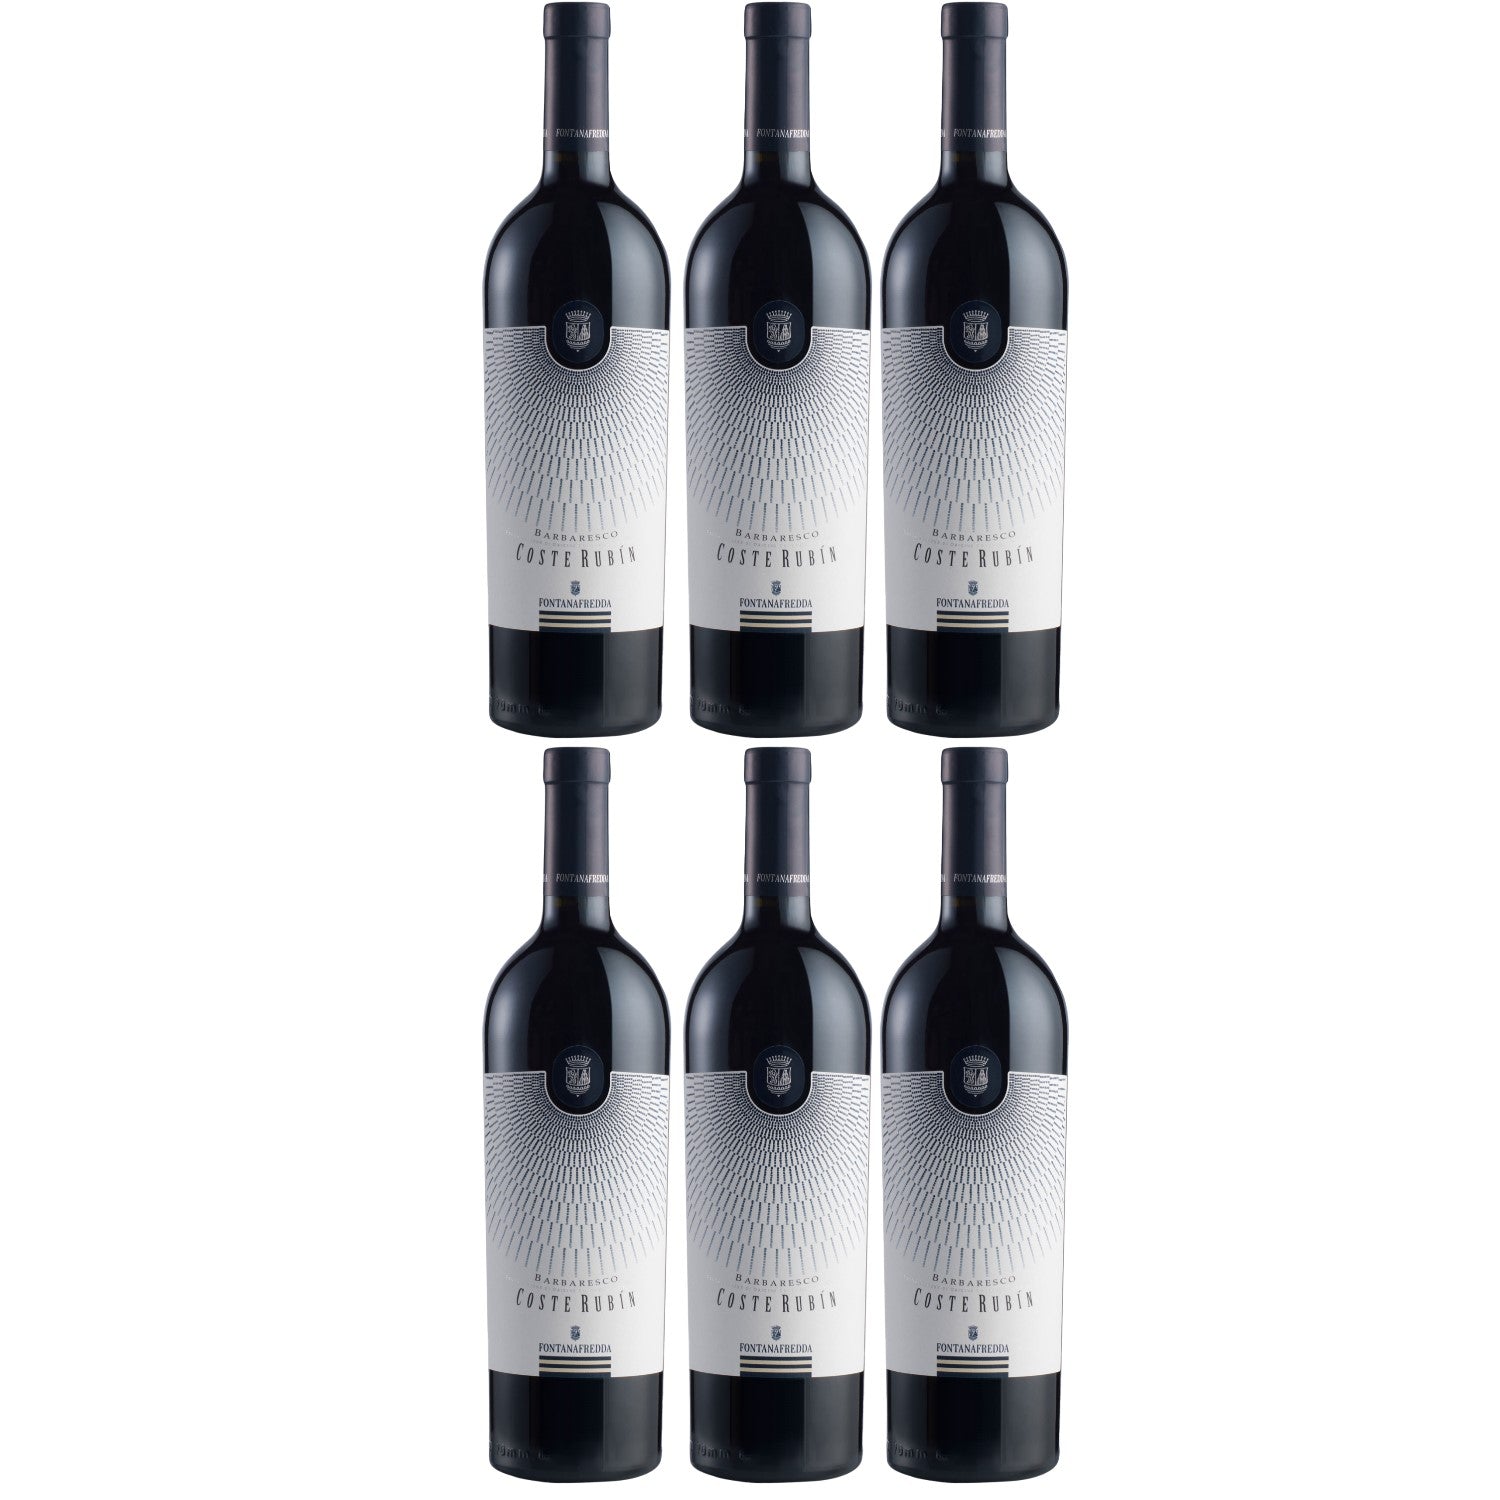 Fontanafredda Coste Rubin Barbaresco DOCG Rotwein Wein trocken Italien (6 x 0.75l) - Versanel -